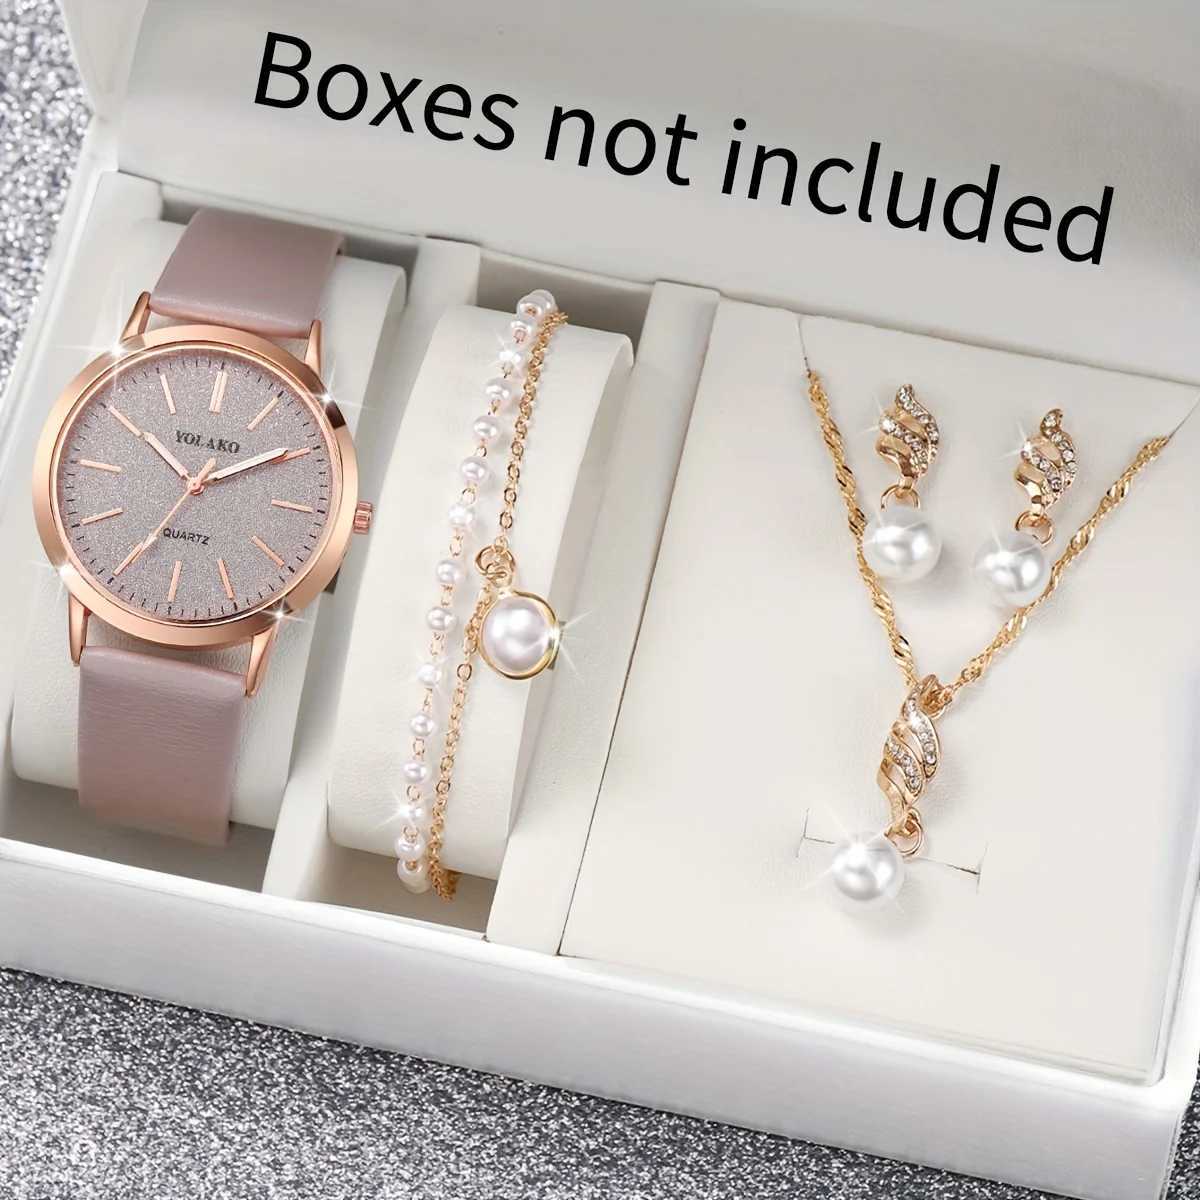 Frauen Uhren Frauen glänzender Strassquarz analog Pu Leder Handgelenk Faux Pearl Jewelry Set Gift für Mutter ihr